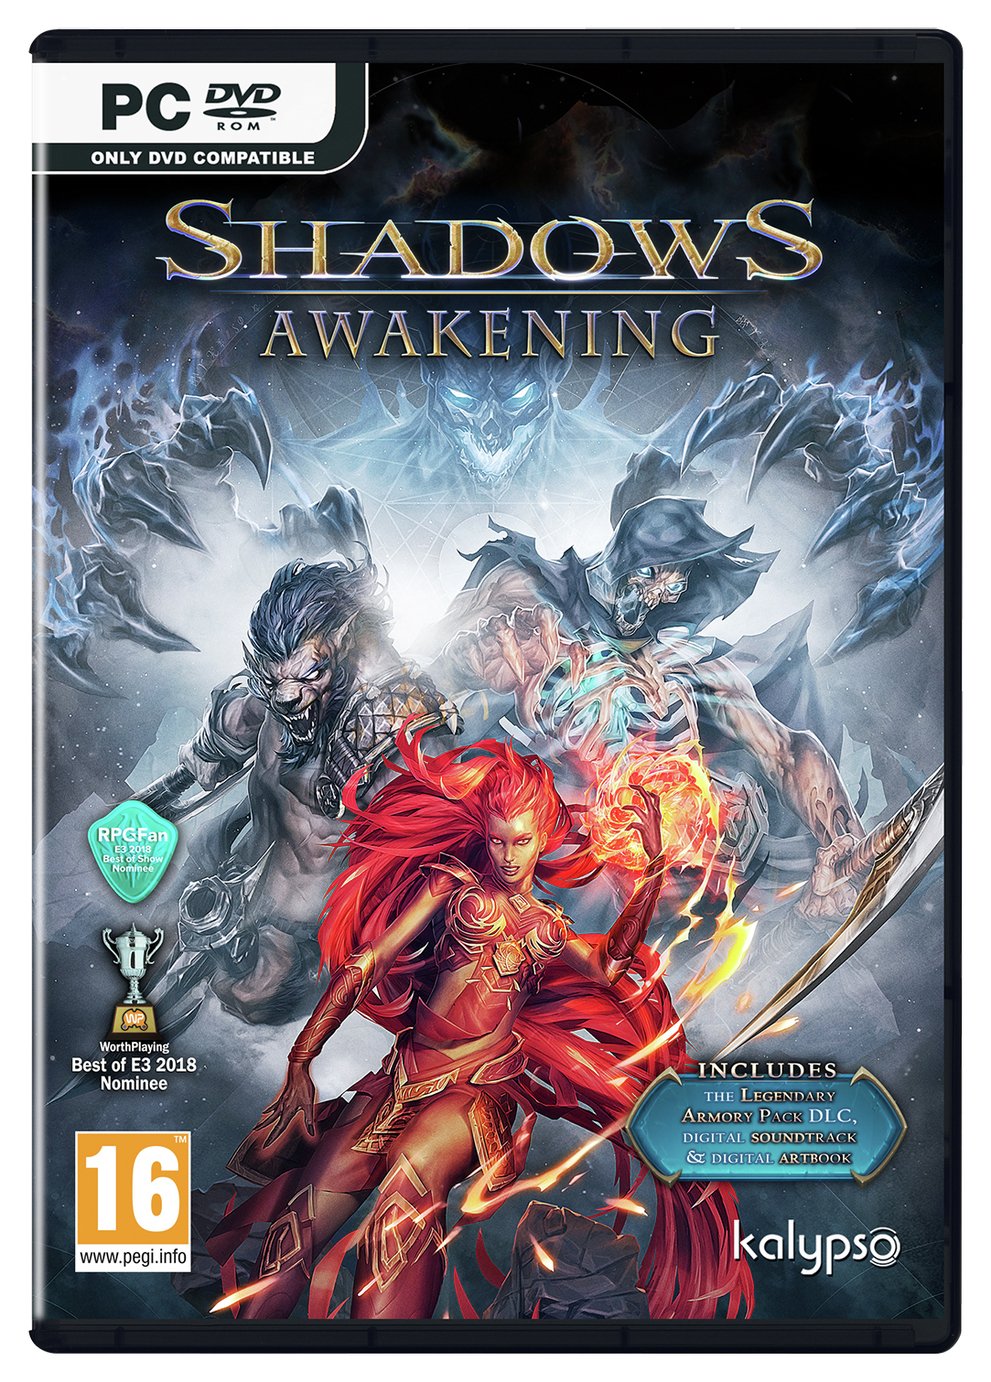 Shadows Awakening PC Game review